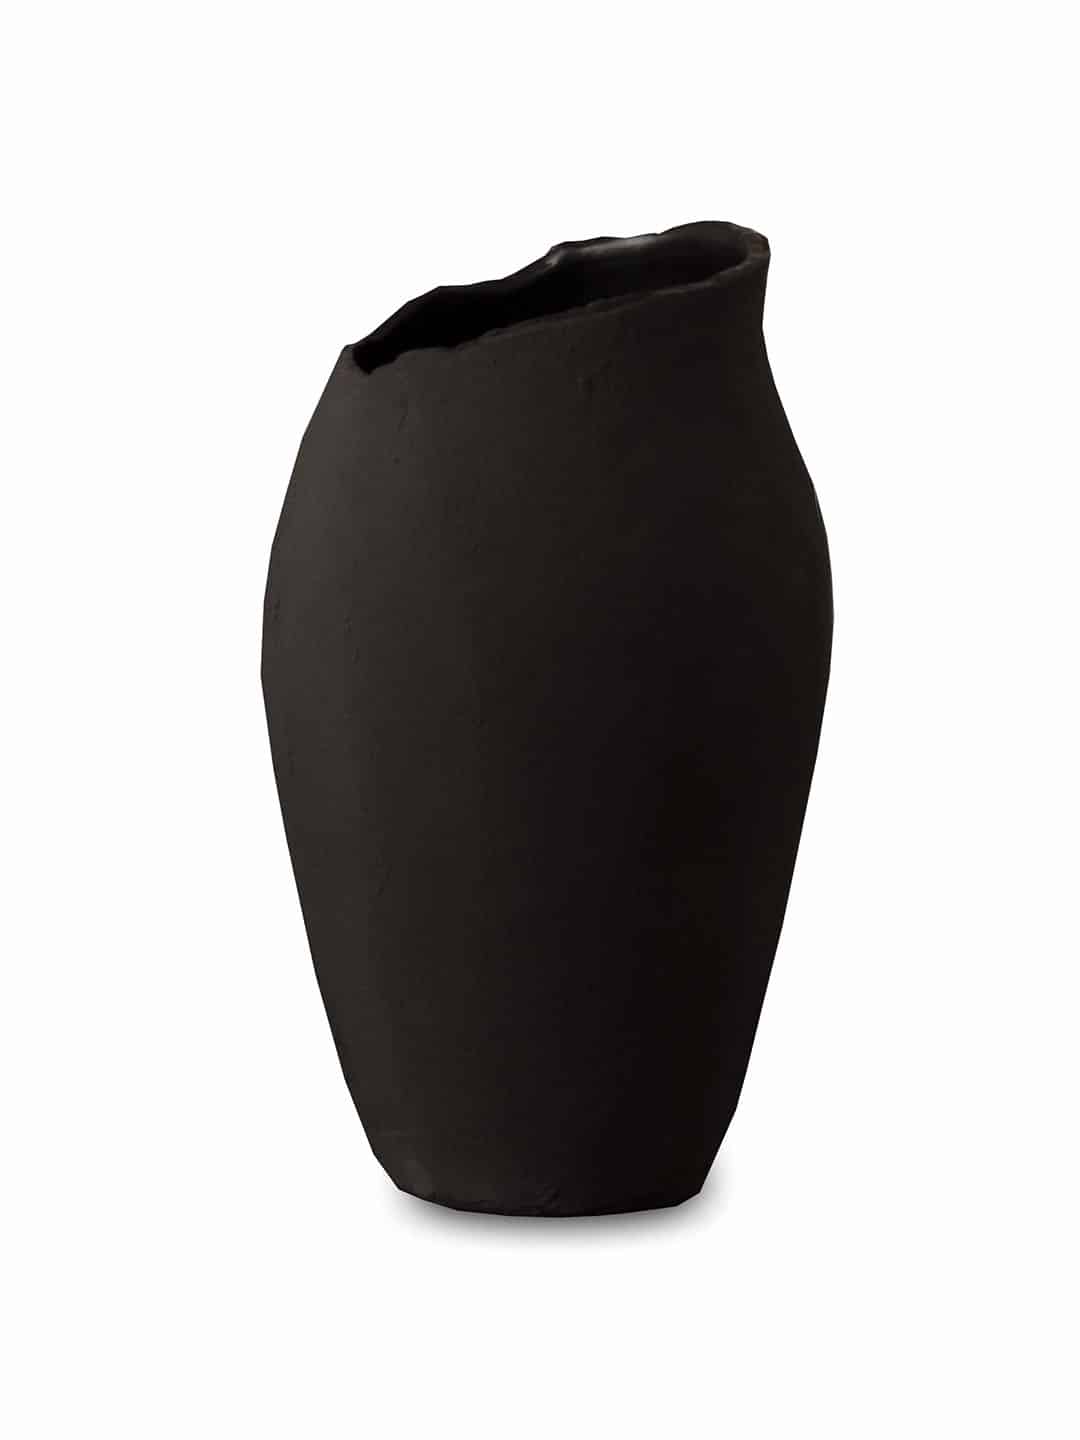 Оригинальная ваза Sibast Magnolia черного цвета